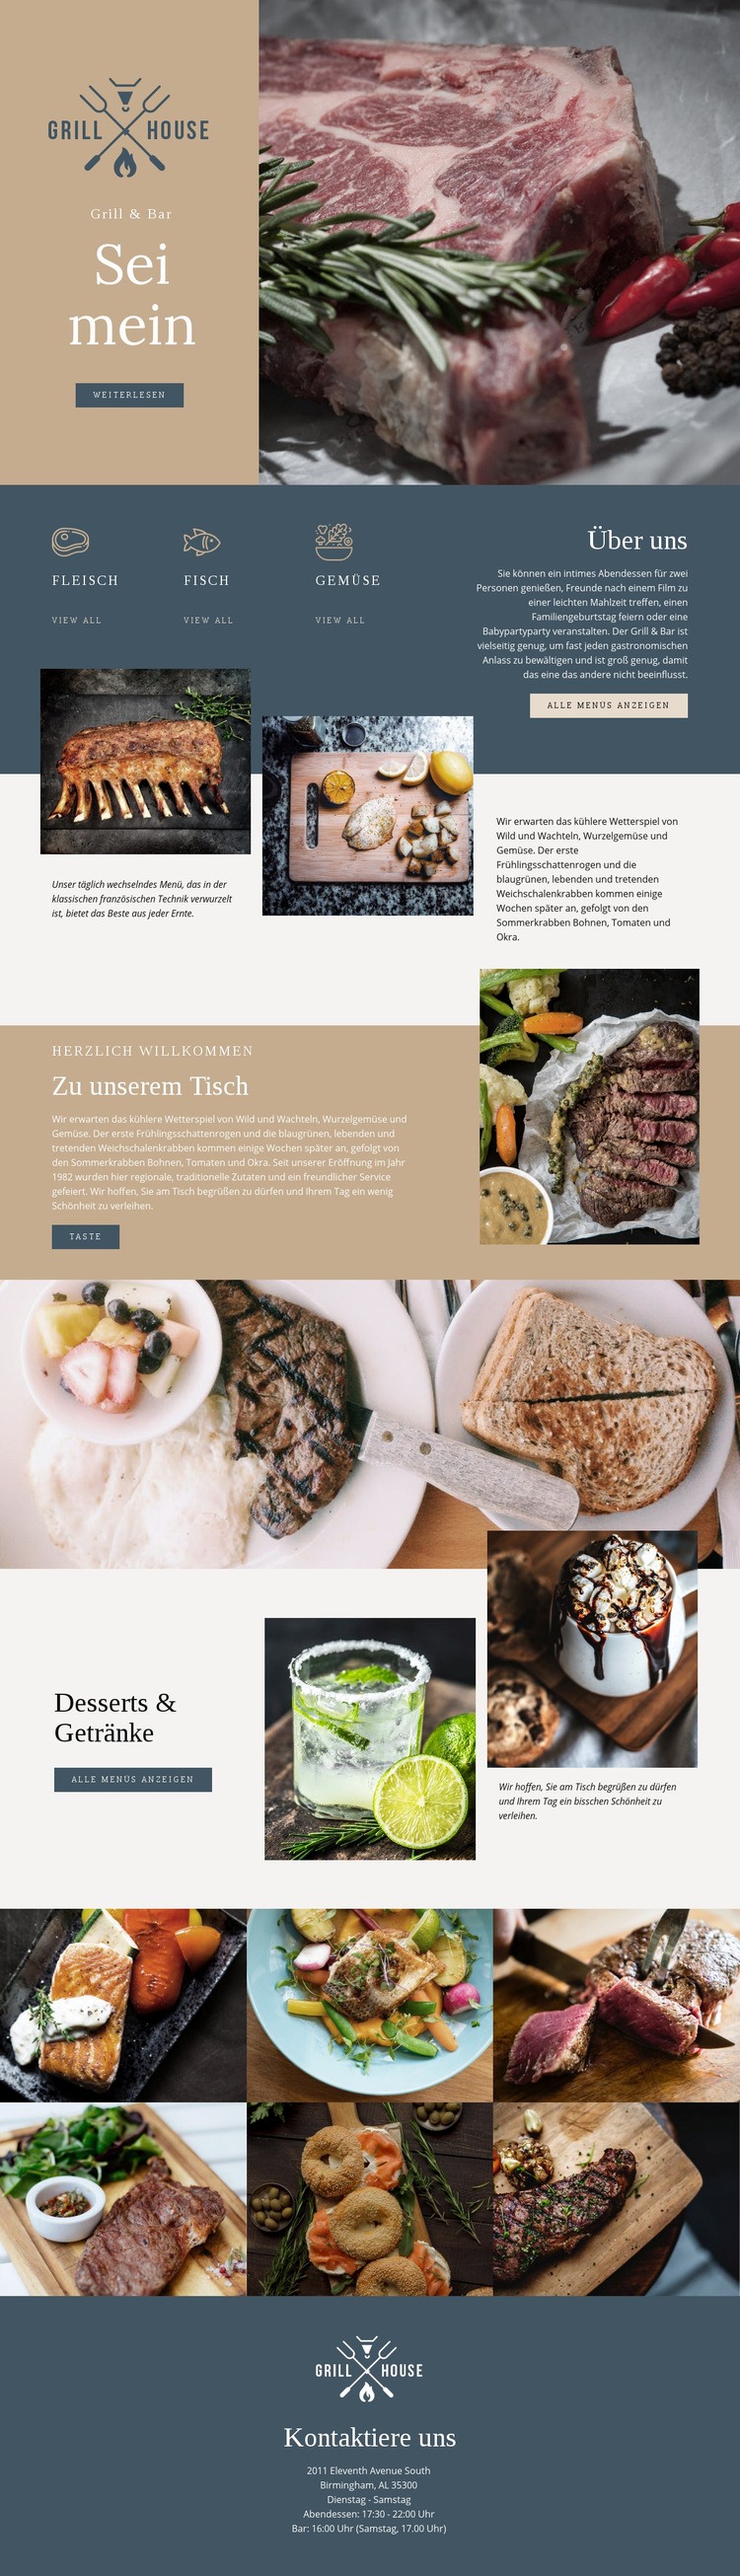 Feinstes Grillhaus Restaurant Website design